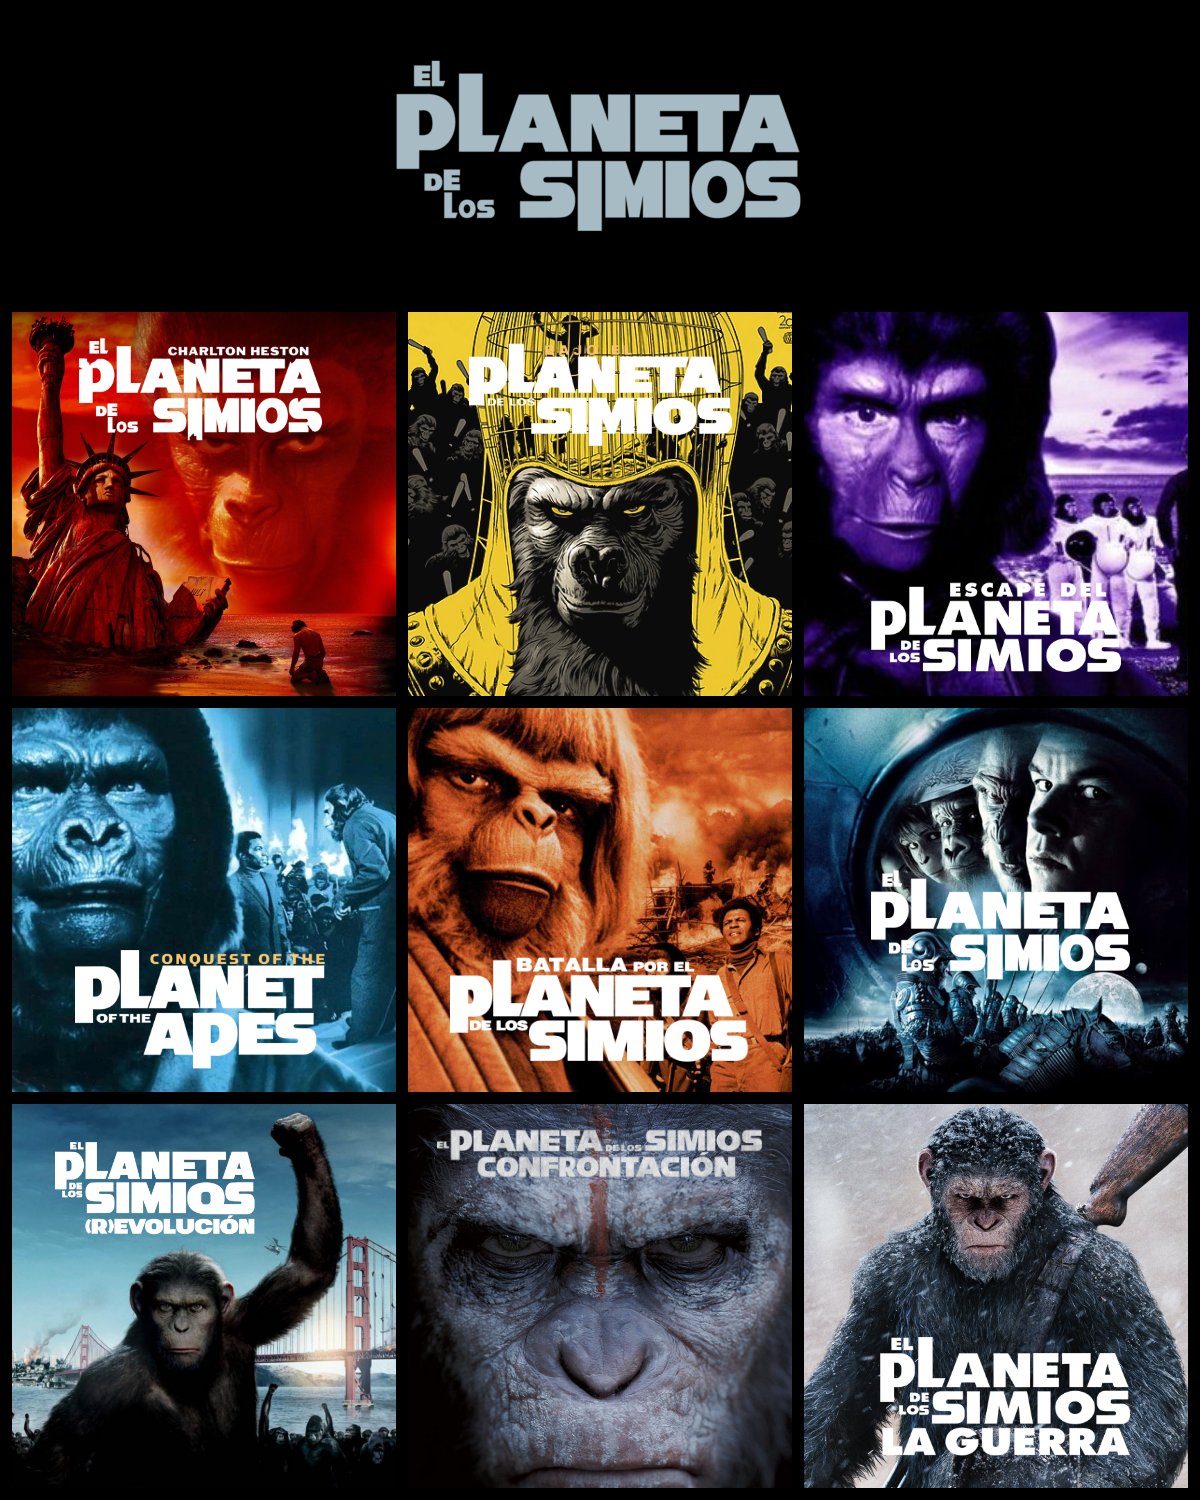 Star+ Latinoamérica on Twitter: "Con la llegada de la última película que  faltaba, ya está disponible la saga completa de 'El Planeta de los Simios'  en #StarPlusLA. https://t.co/IaRxEKLalY" / Twitter